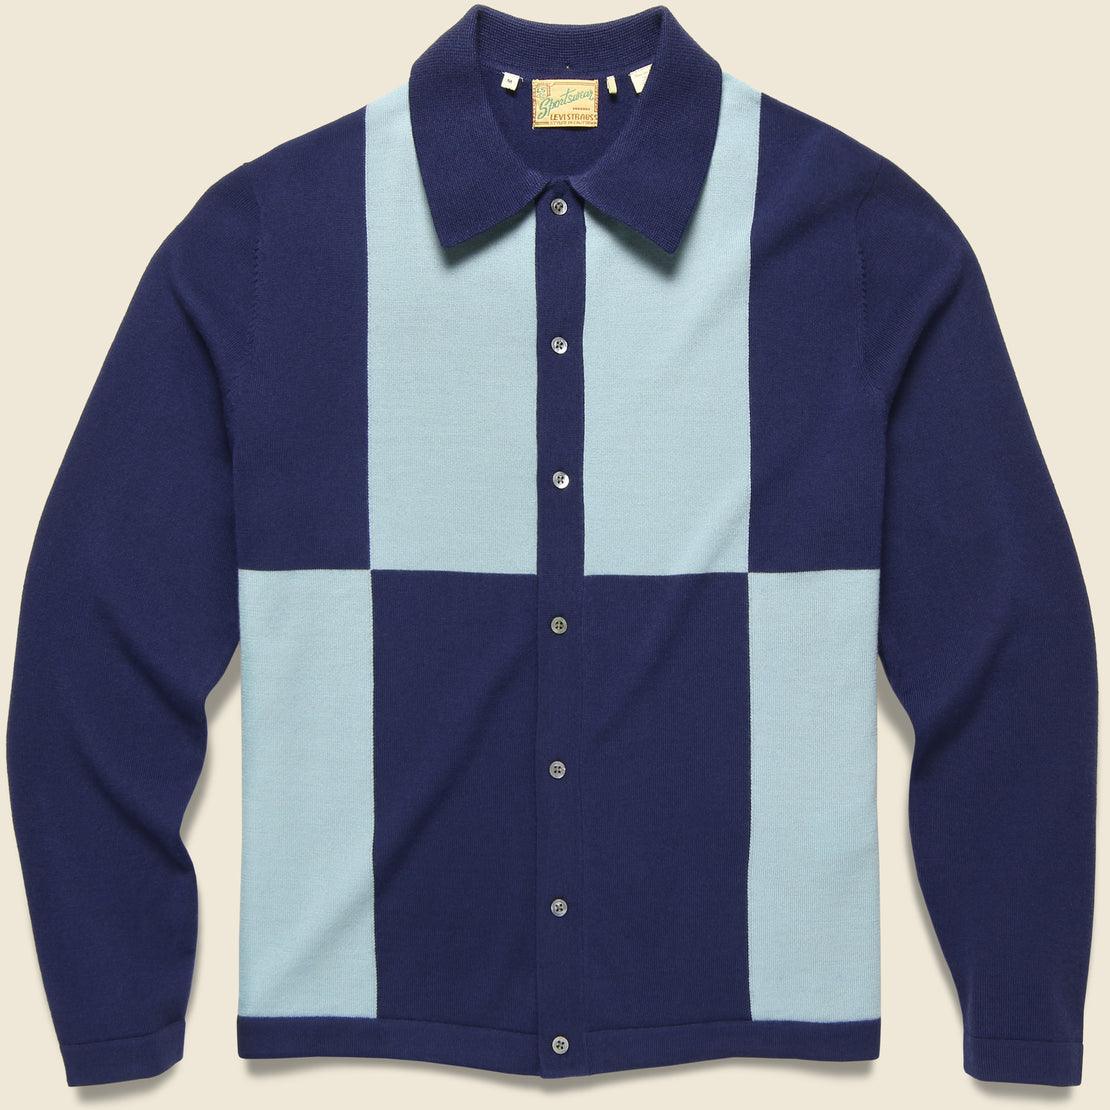 Levis Vintage Clothing Knit Shirt - Colorblock Blue